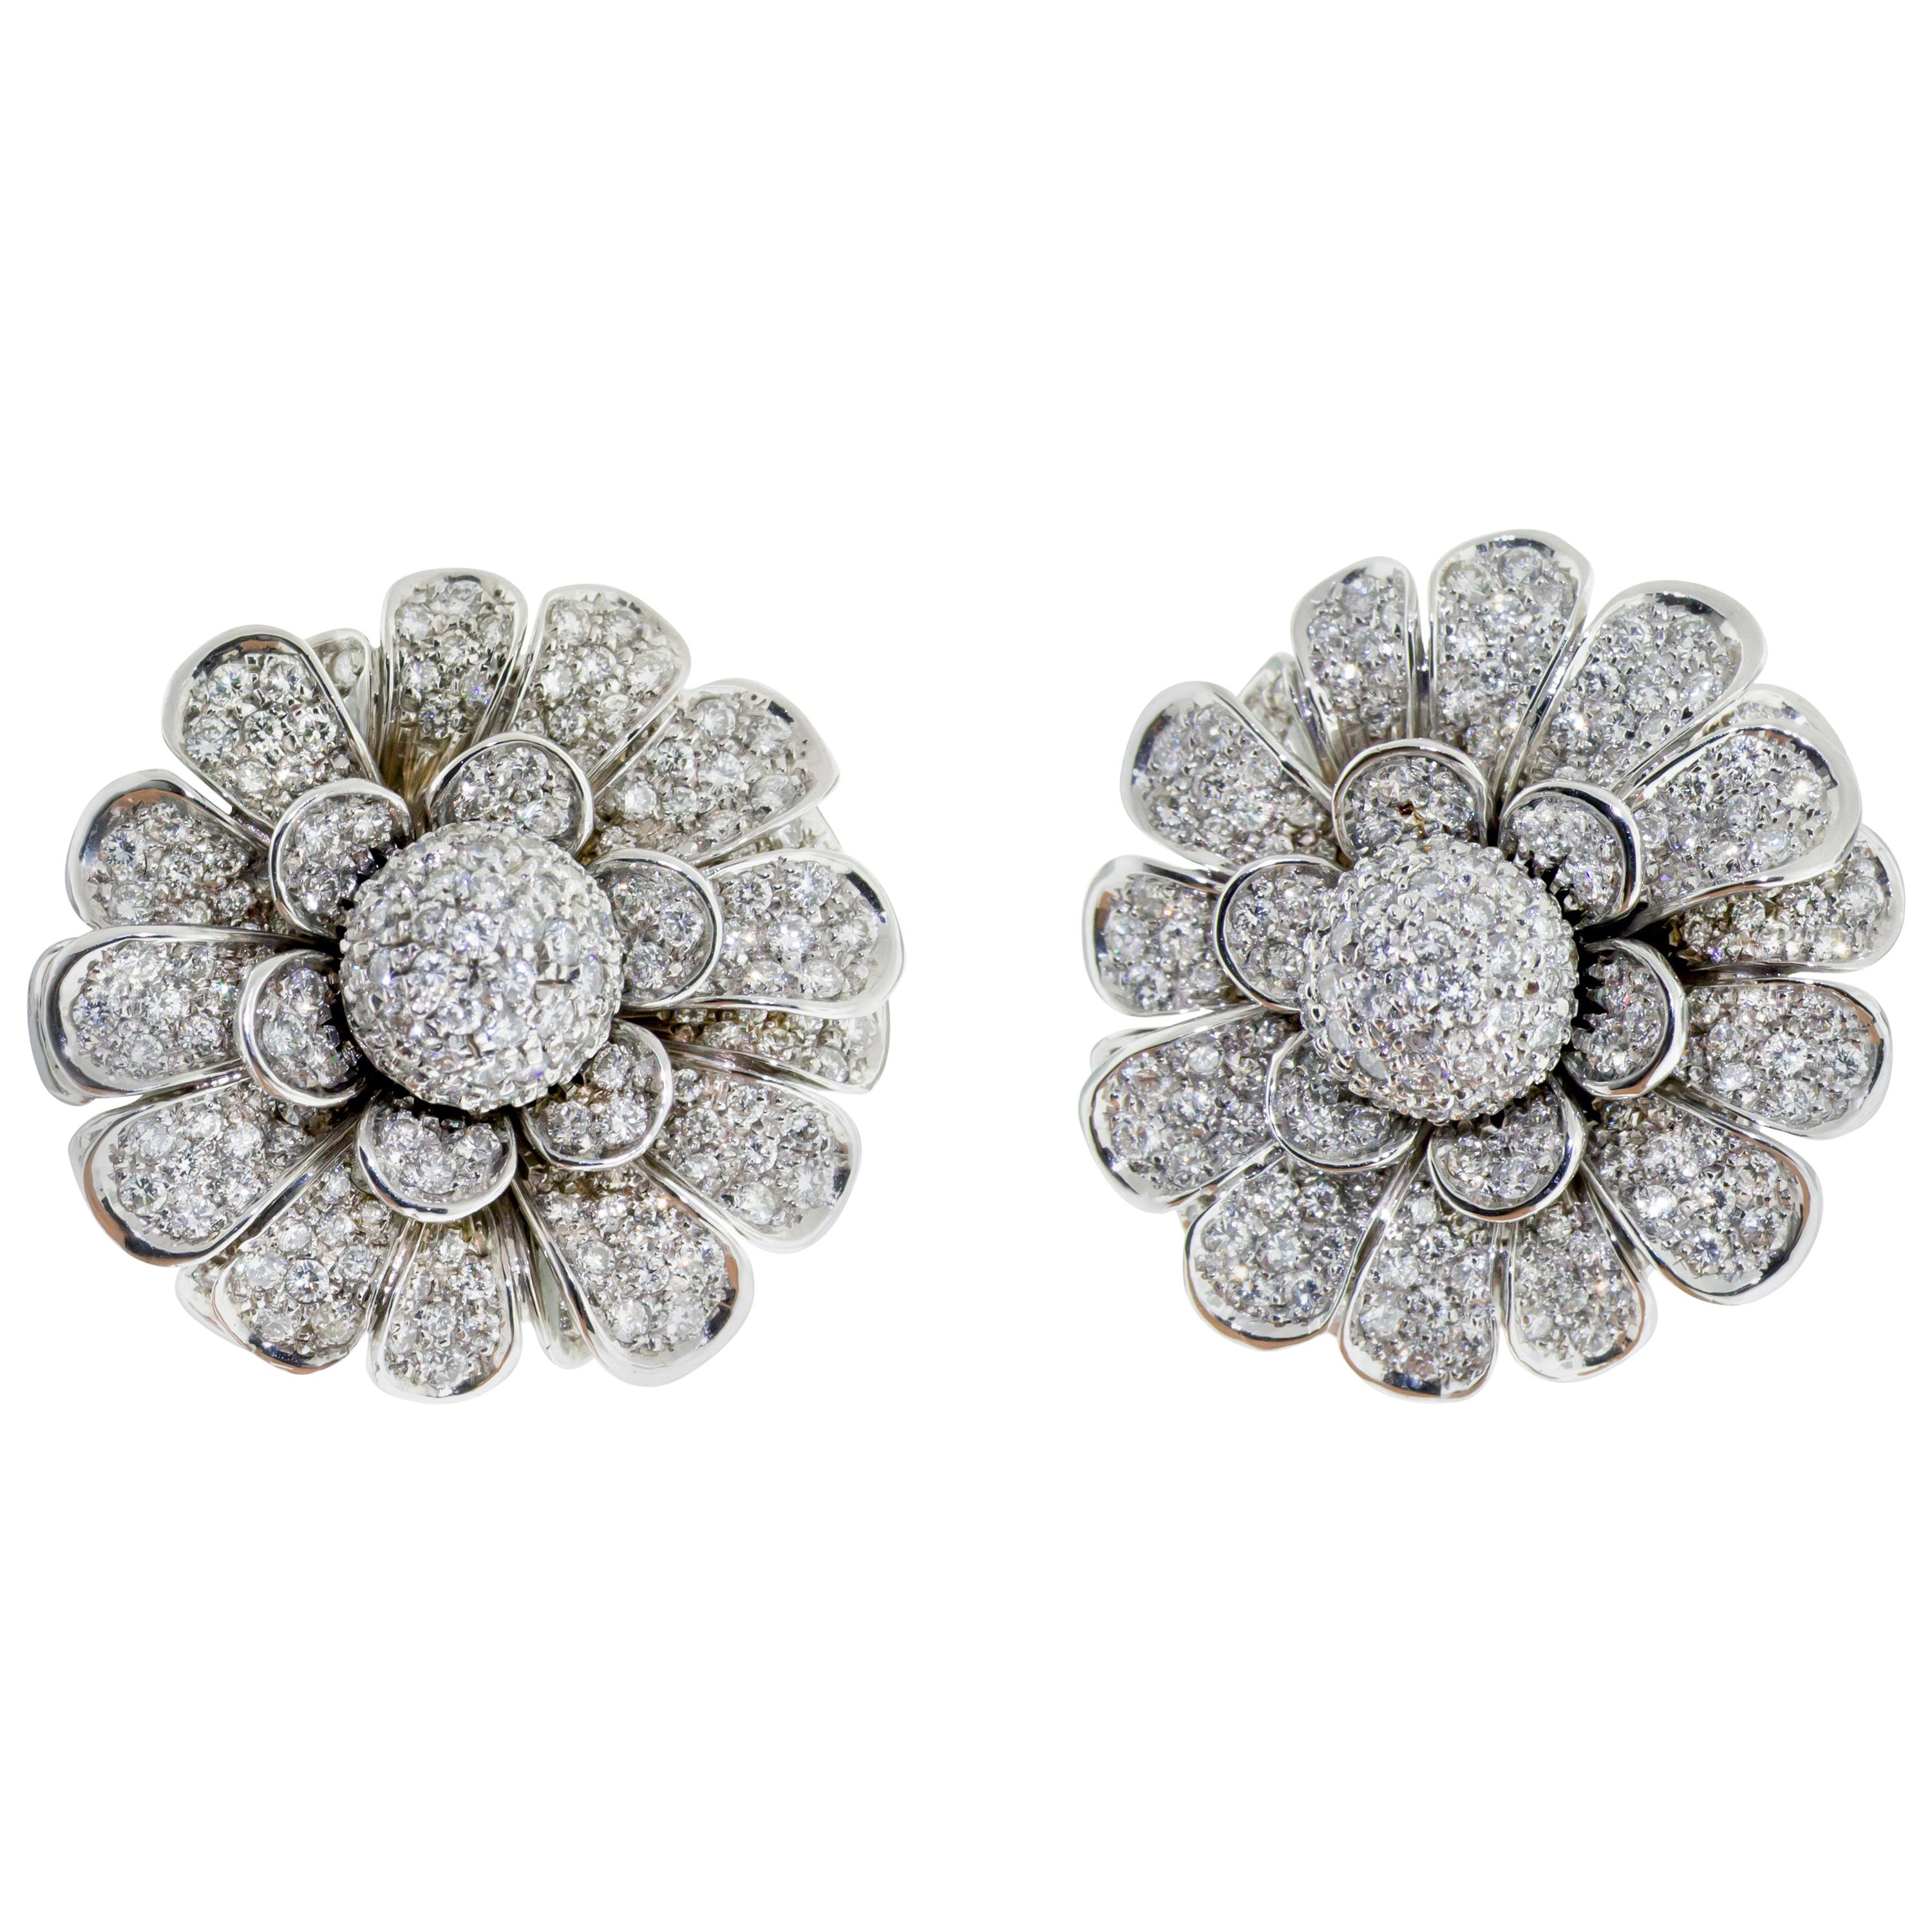 18 Karat White Gold Pave Diamond Flower Earring Clips